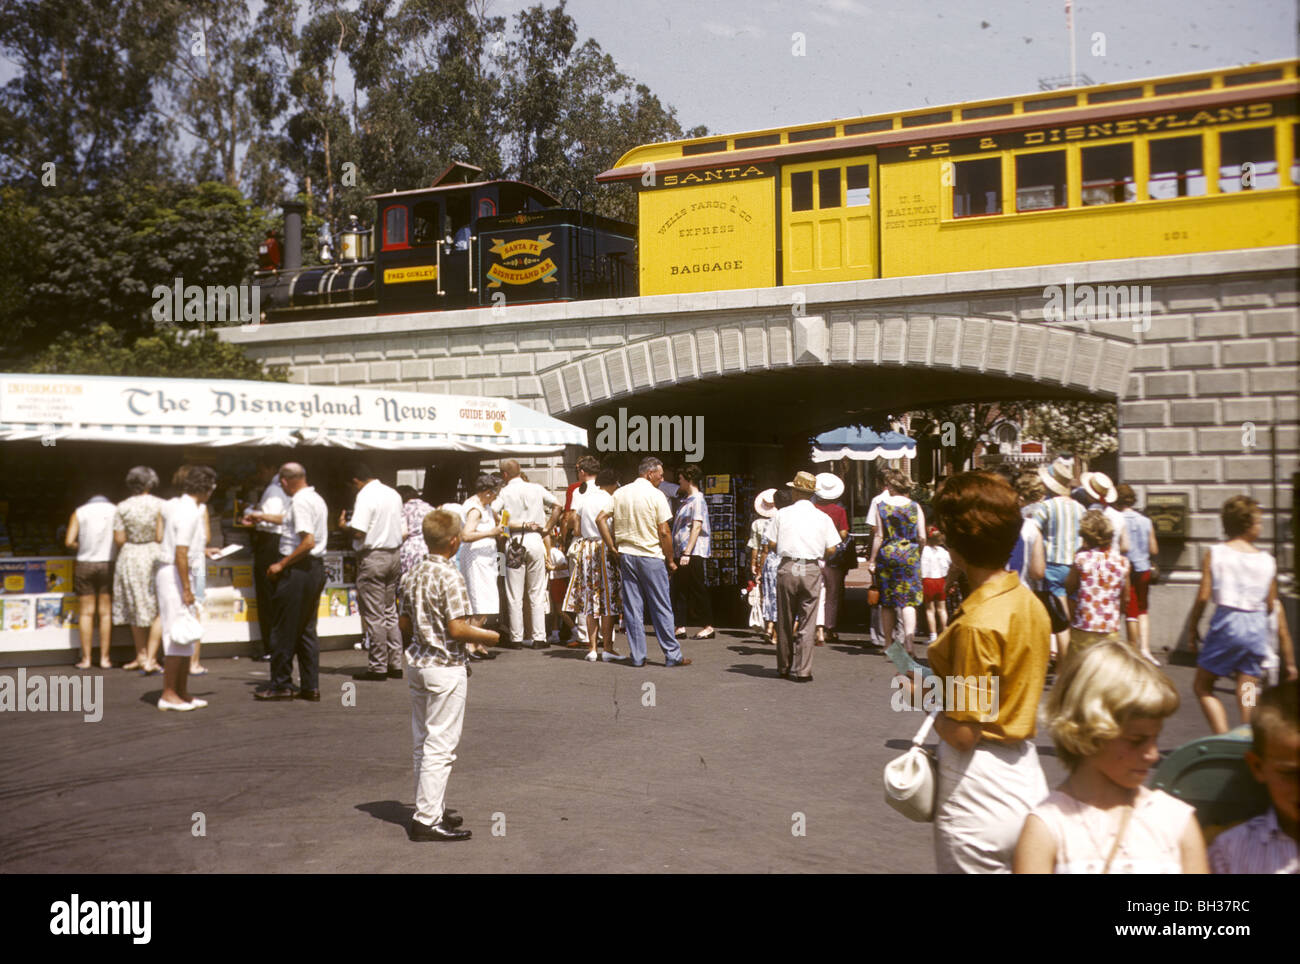 Santa Fe und Disney Zug und Disneyland News stehen. Disneyland Urlaub Kodachromes von 1962. Stockfoto